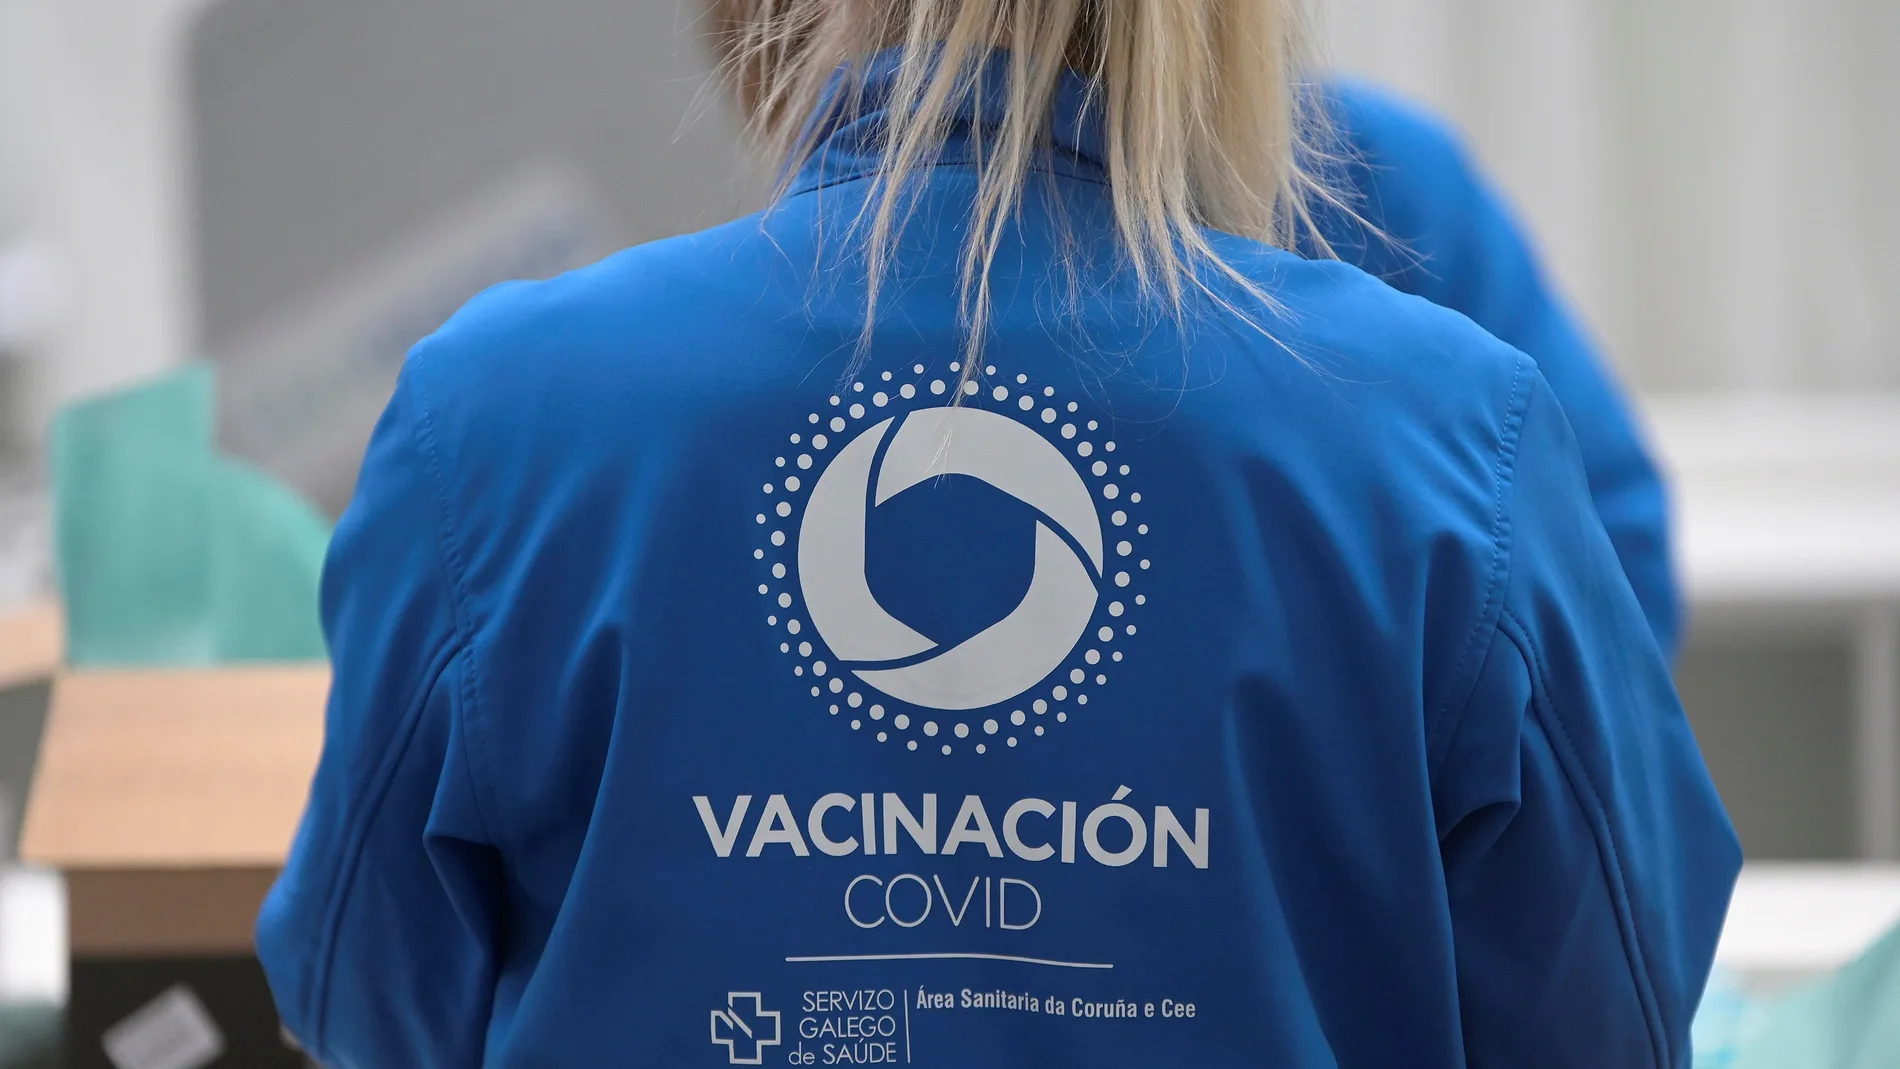 Una enfermera prepara una dosis de la vacuna de Pfizer en Galicia